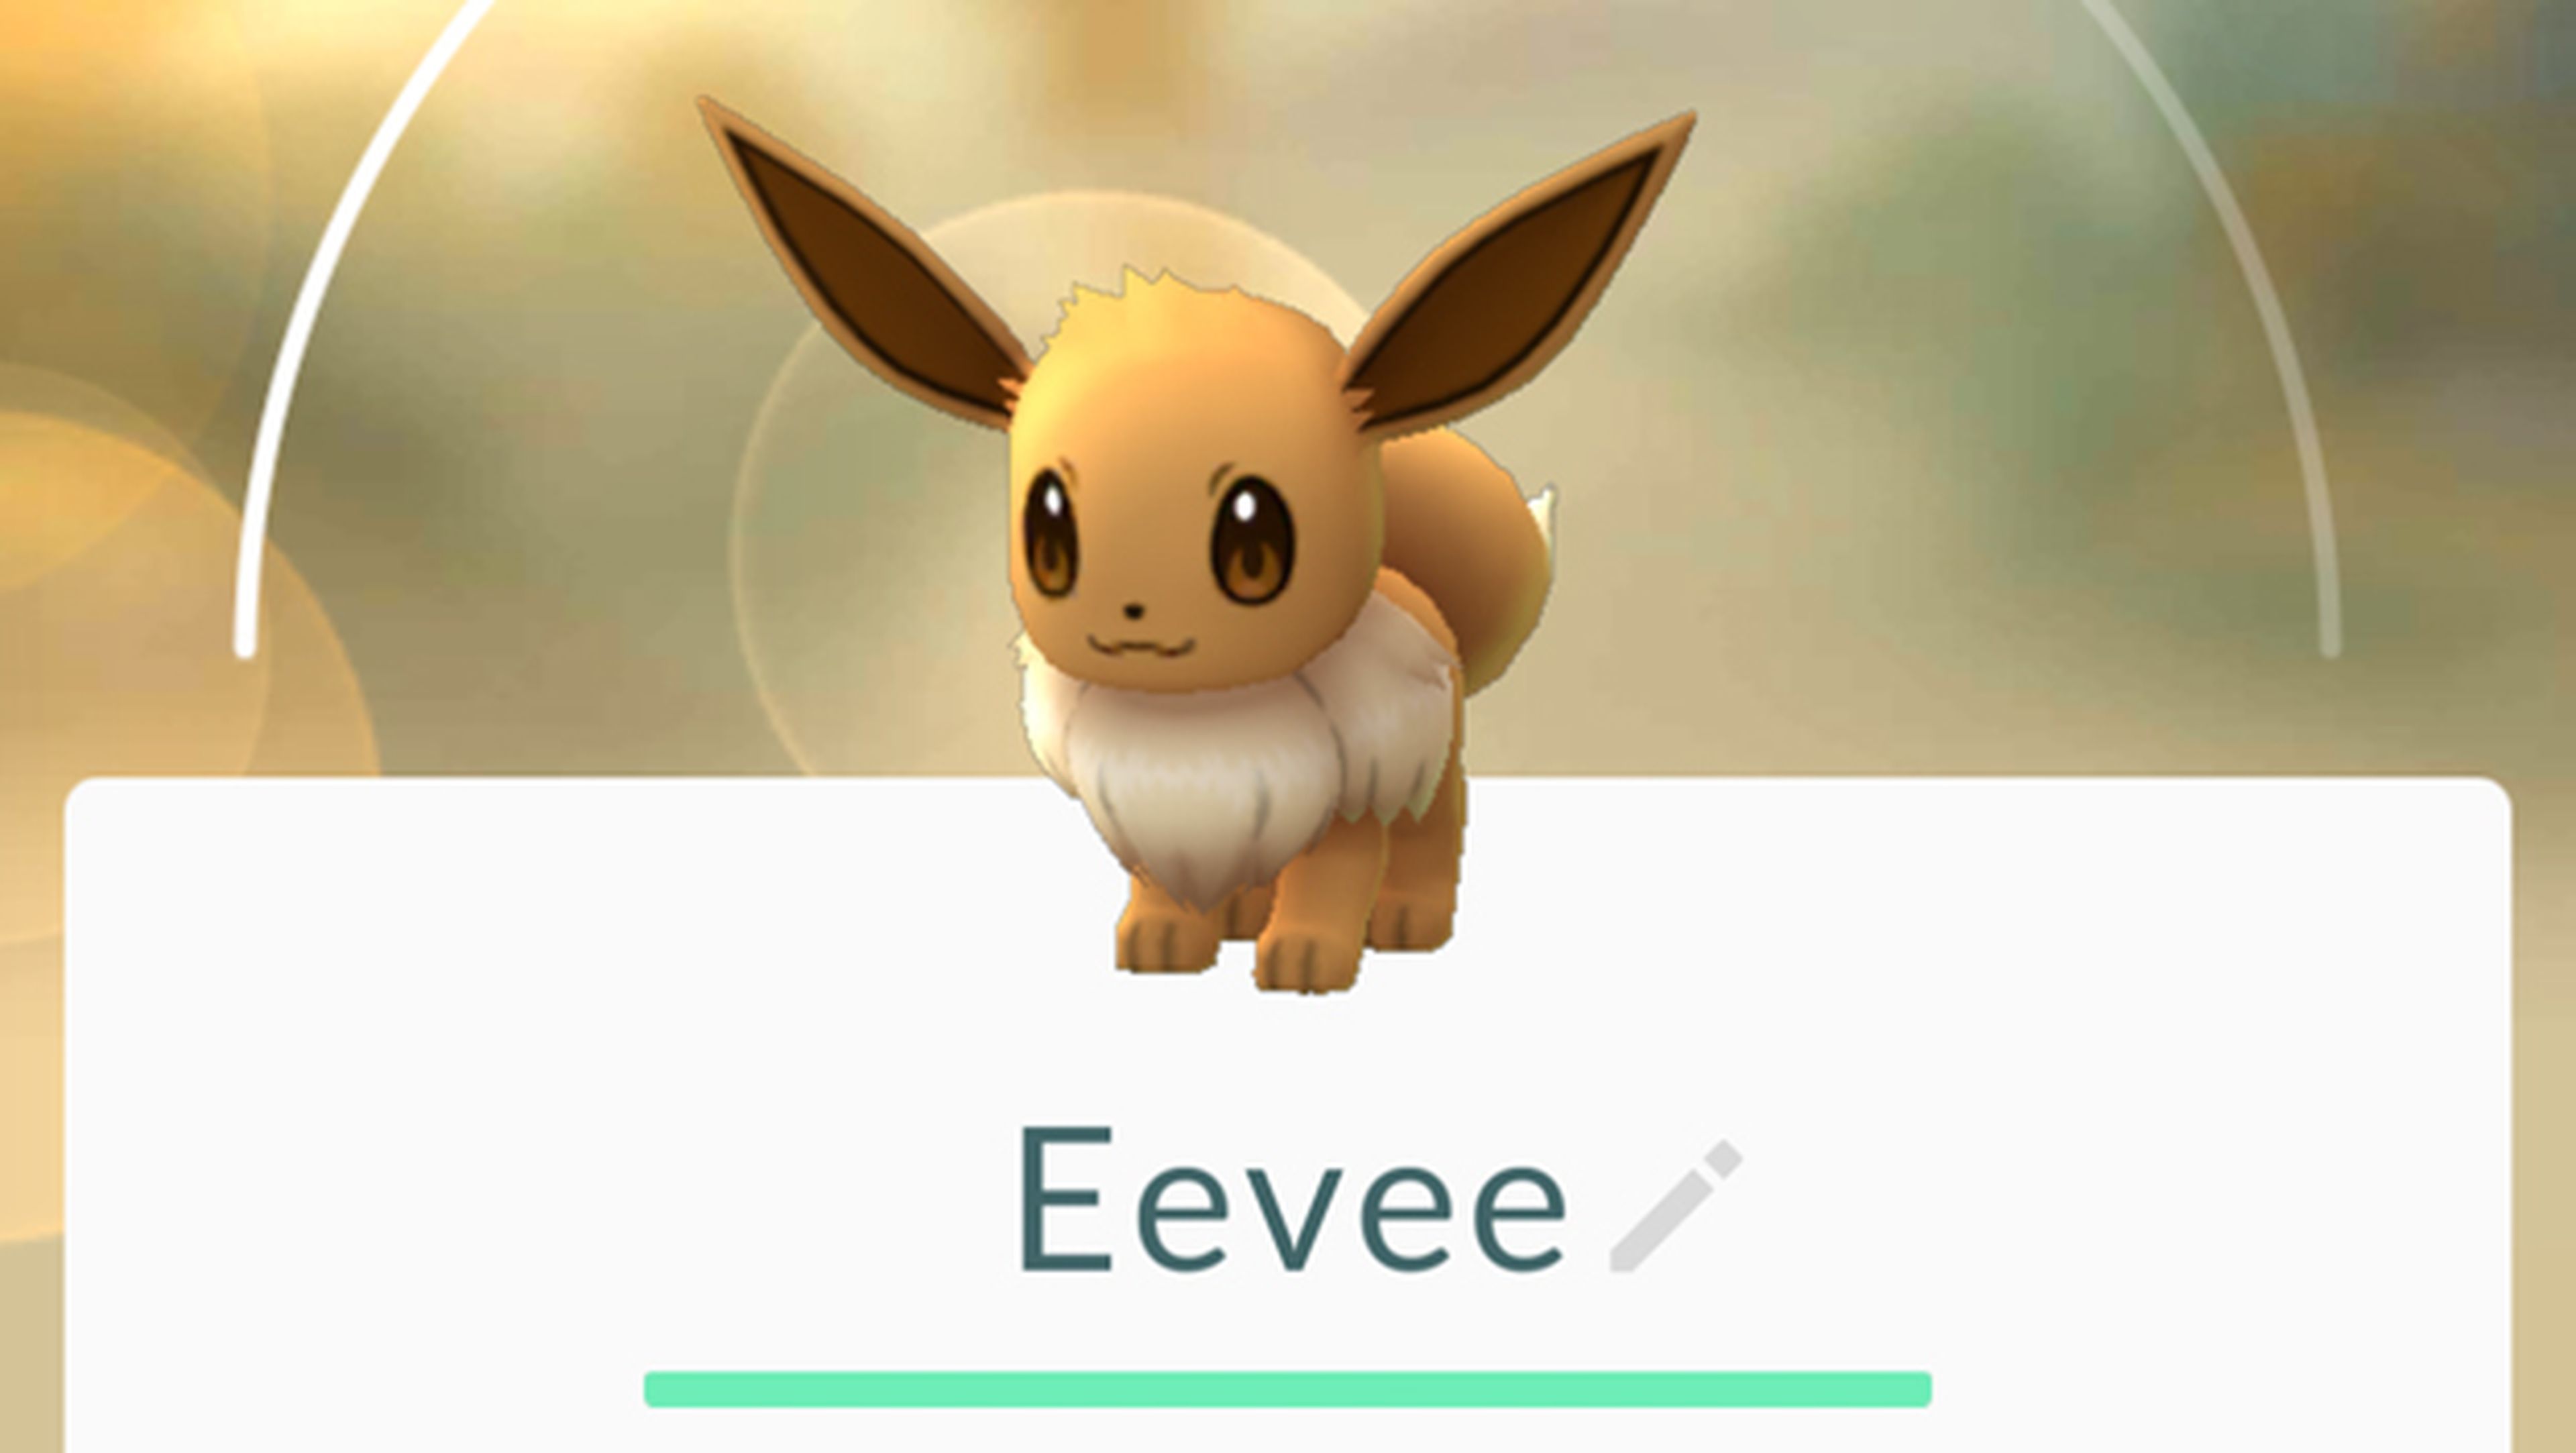 Escoge a qué evolucionará Eevee en Pokémon GO de este modo